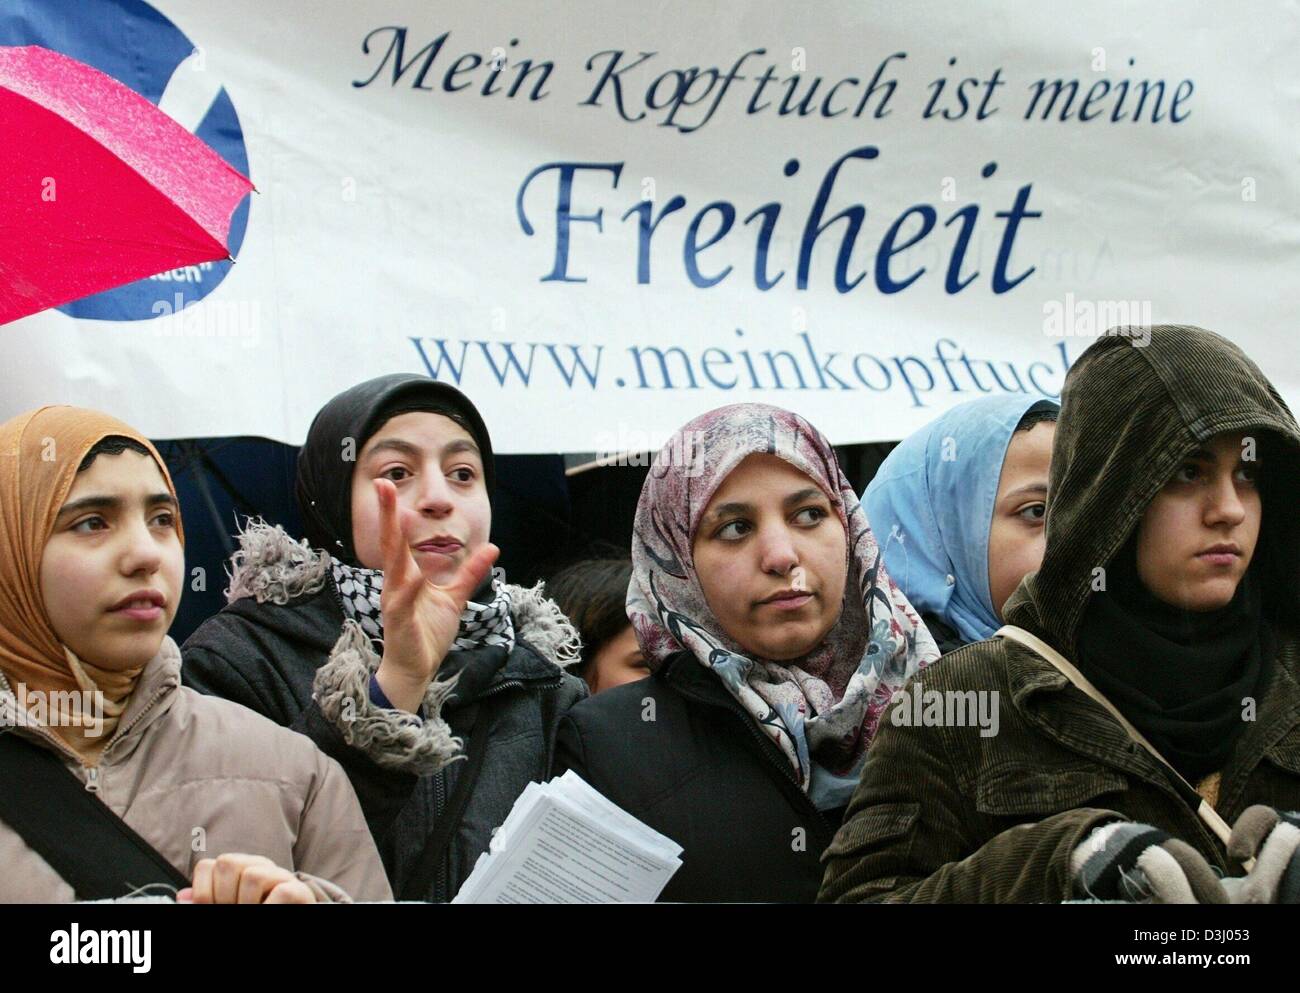 Dpa) - mehrere Frauen mit Kopftuch vor ein Banner lesen "mein Kopftuch ist  meine Freiheit" bei einer Demonstration gegen einen geplanten  Kopftuchverbot in Berlin, 17. Januar 2004 stehen. Die Debatte über  Kopftücher